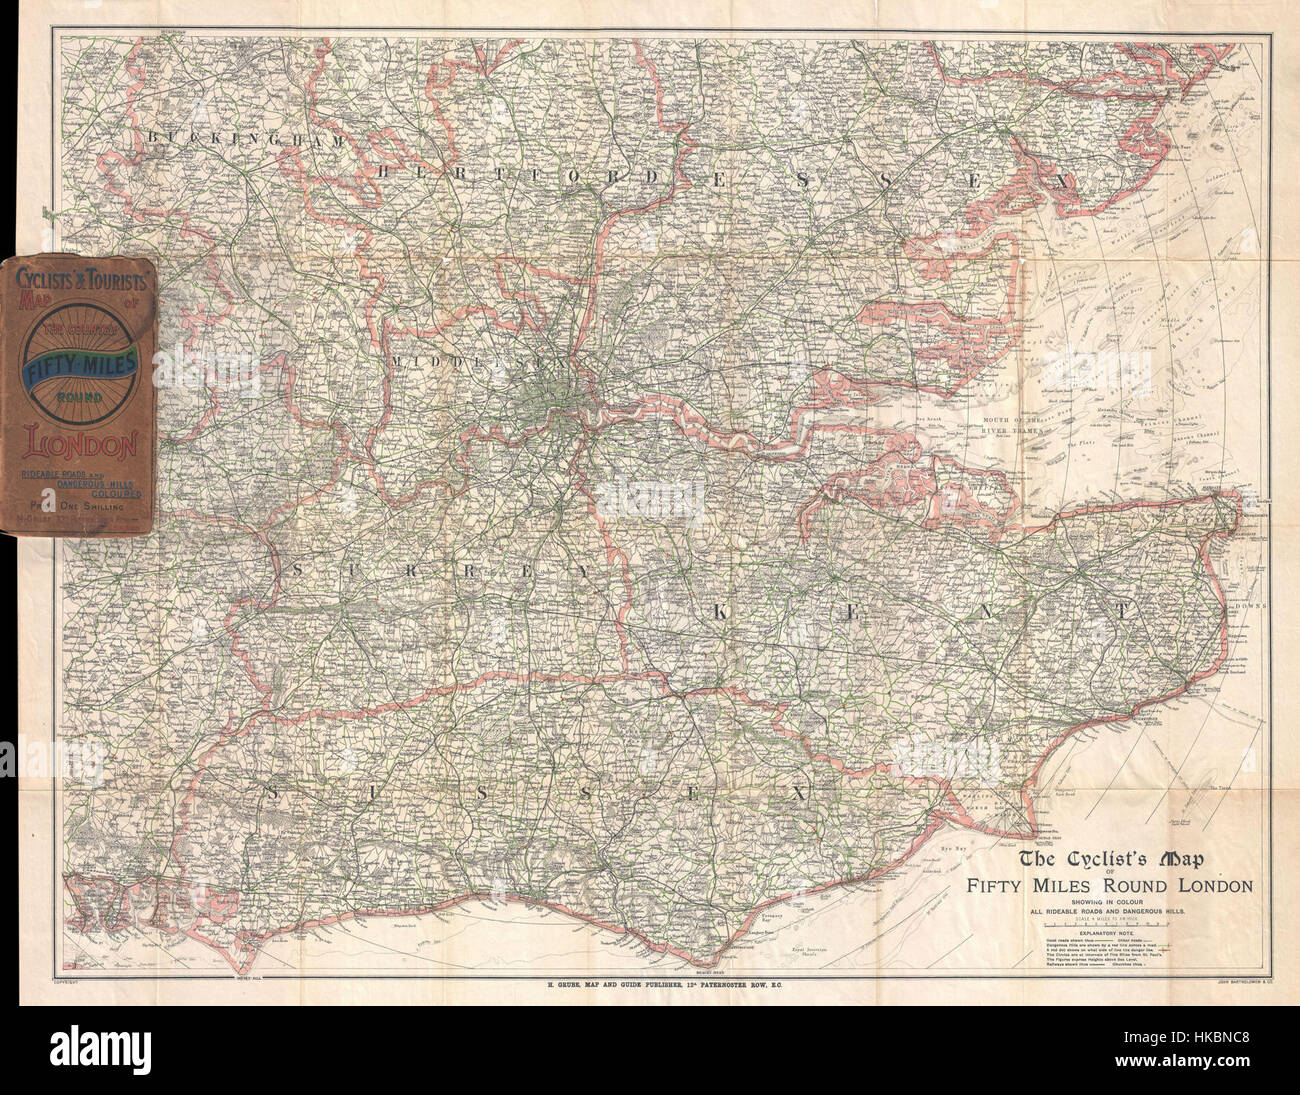 1895 Barthholomew Site du cycliste de 50 kilomètres autour de Londres, Angleterre Londres Geographicus50Miles bartholomew 1895 Banque D'Images